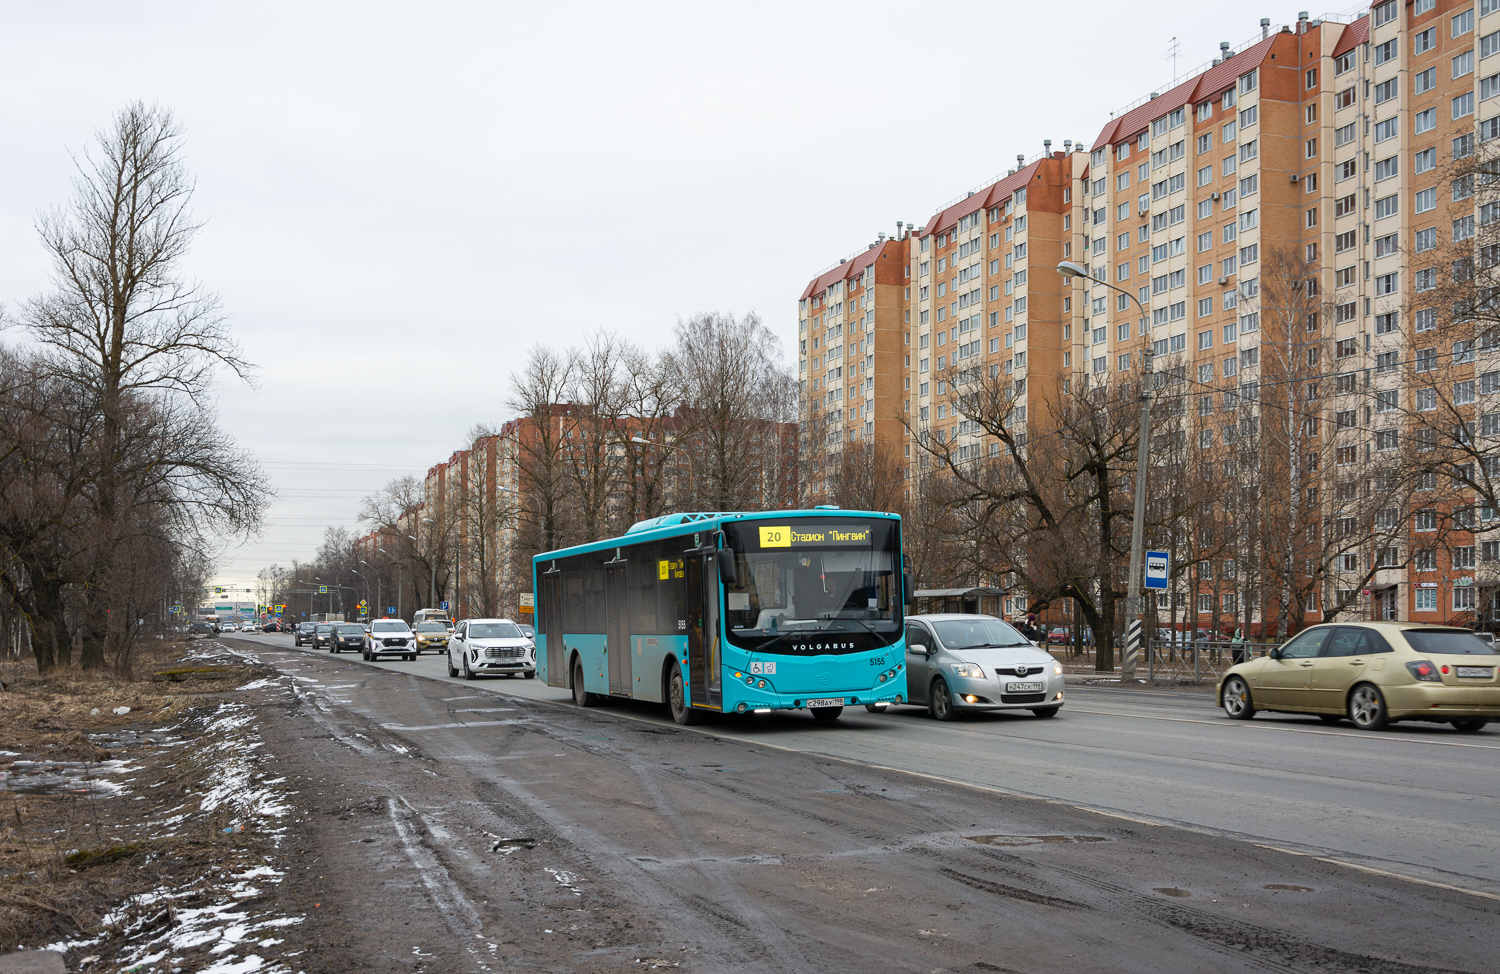 Saint Petersburg, Volgabus-5270.02 # 5155